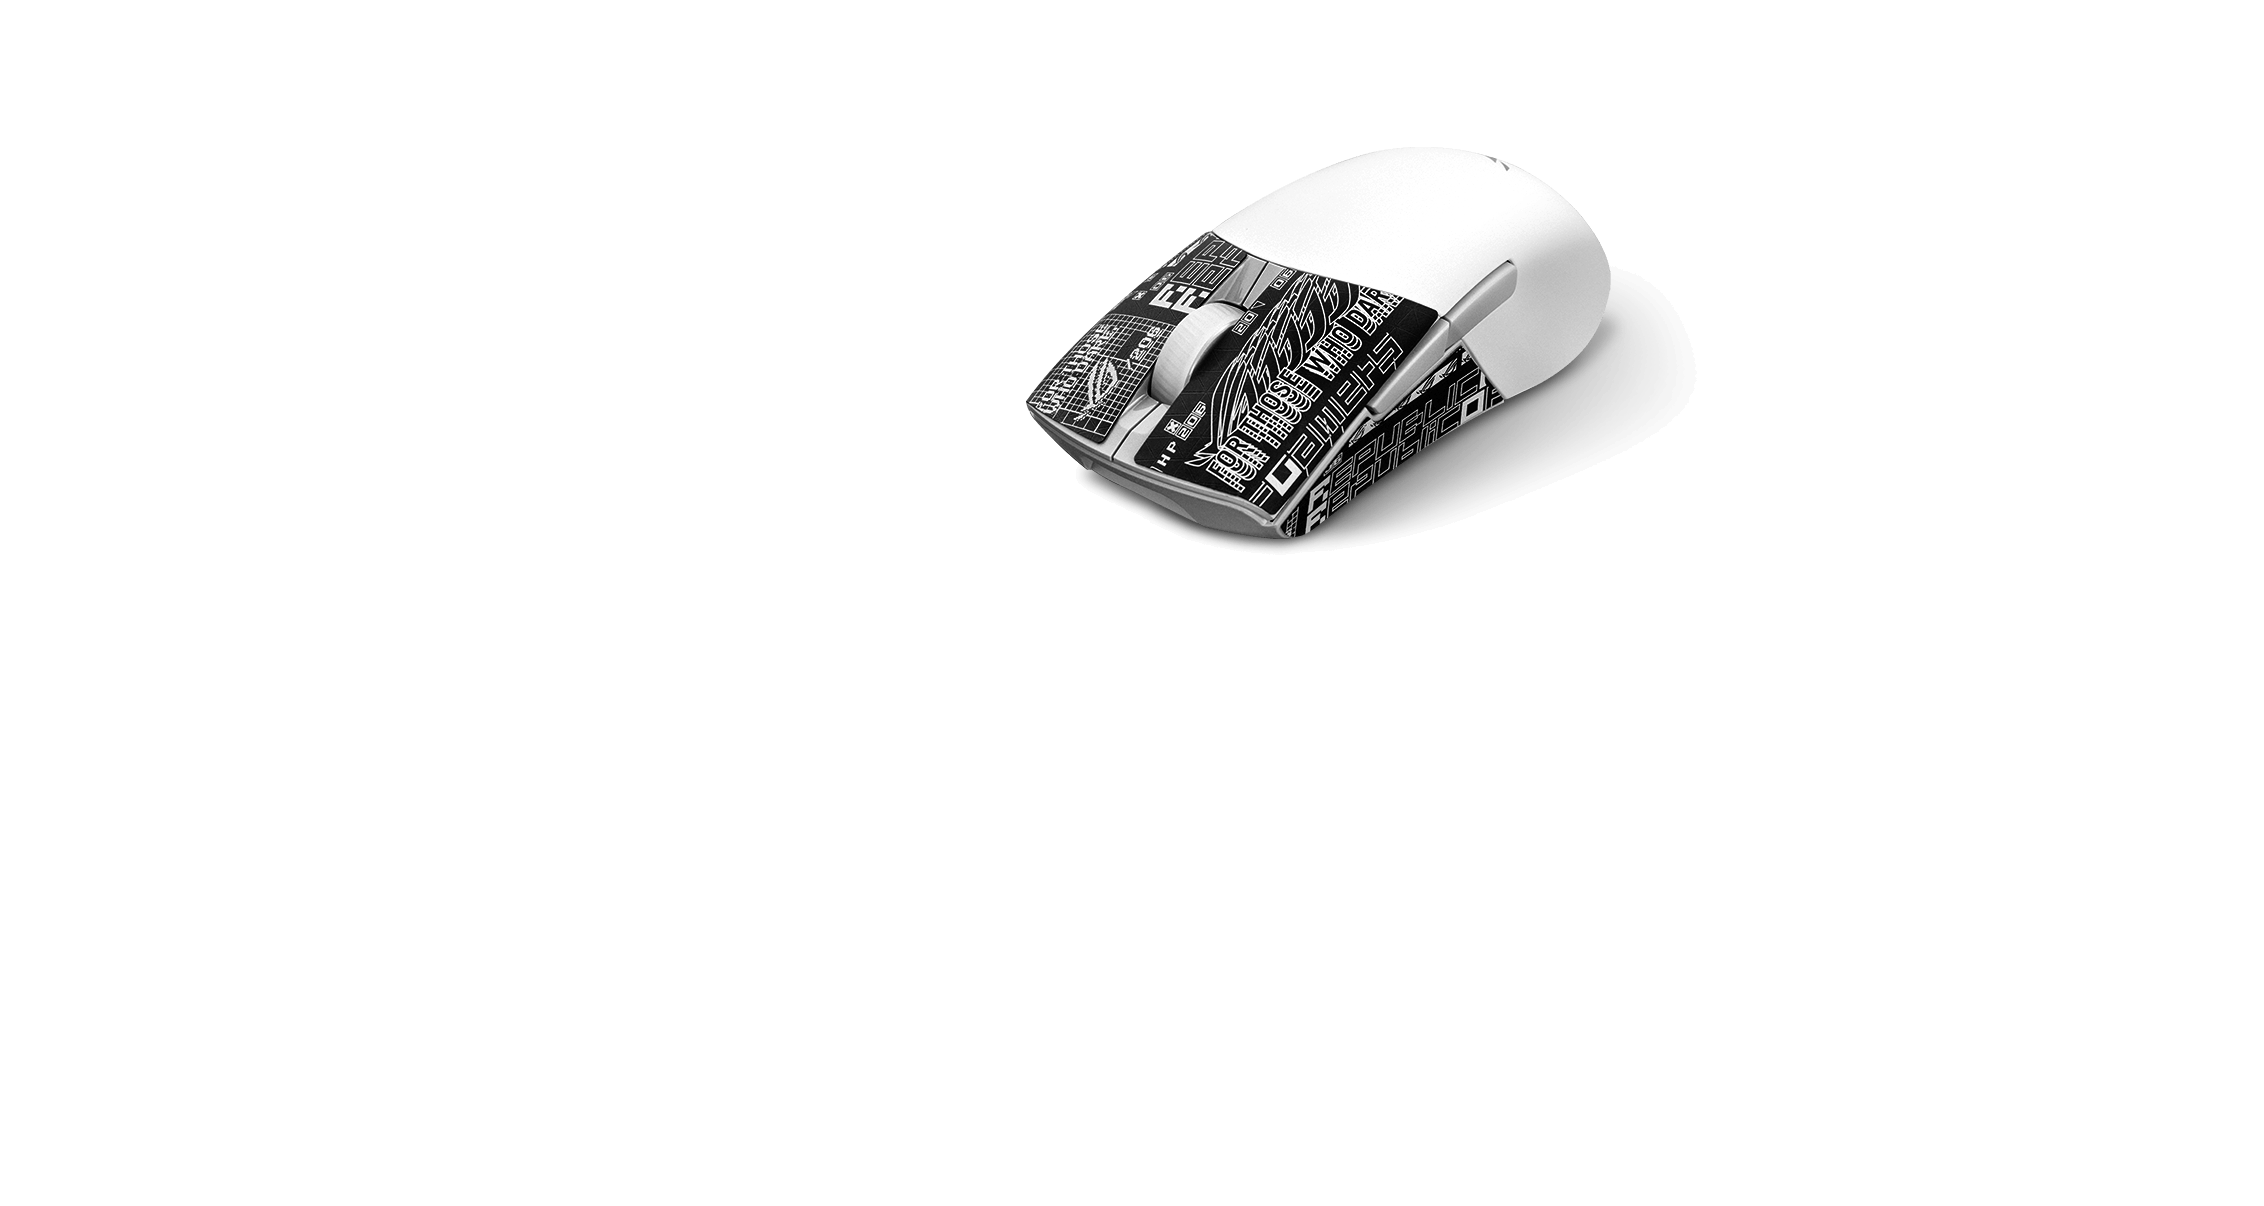 Une souris ROG Keris Wireless AimPoint blanche avec un grip ROG